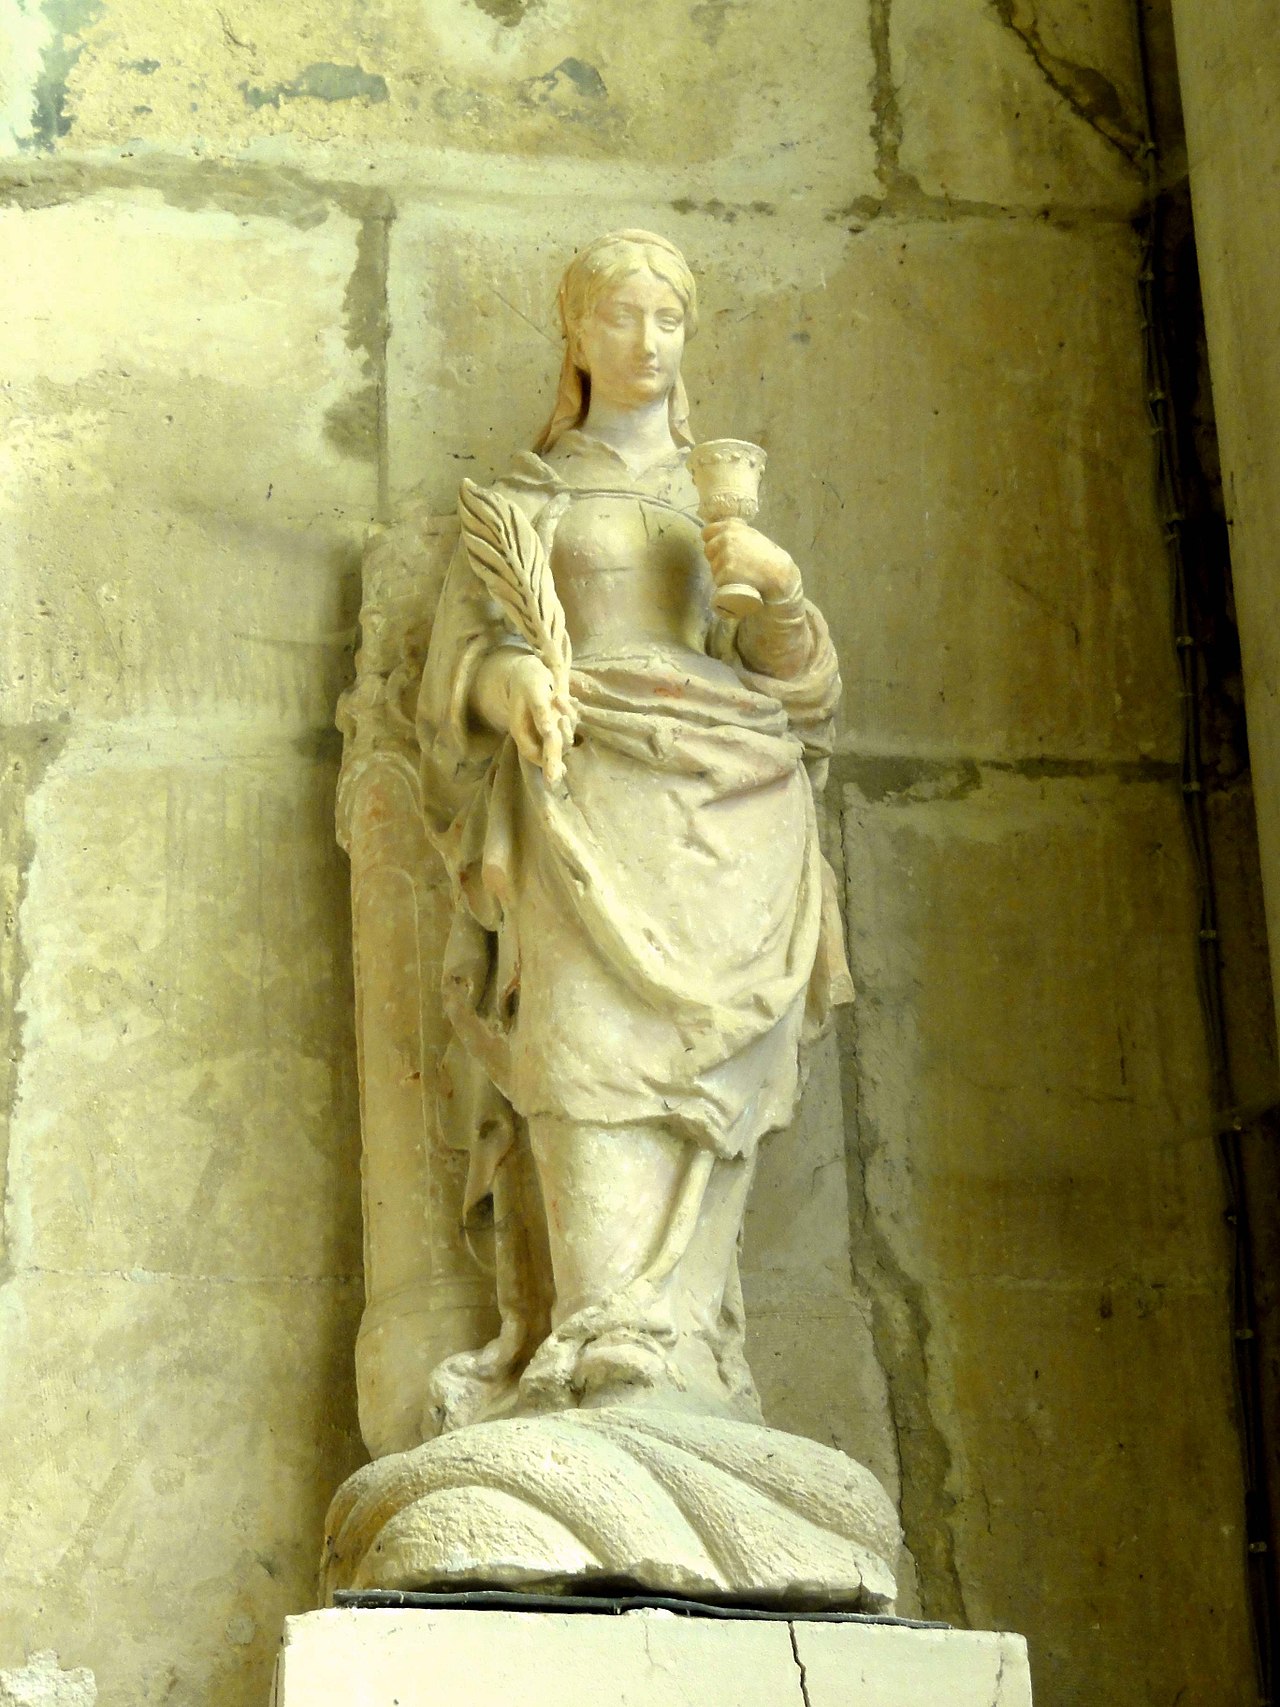 1280px-Vetheuil_95_eglise_Notre-Dame_1ere_chapelle_du_sud_statue_de_sainte_Barbe_la_grande_martyre